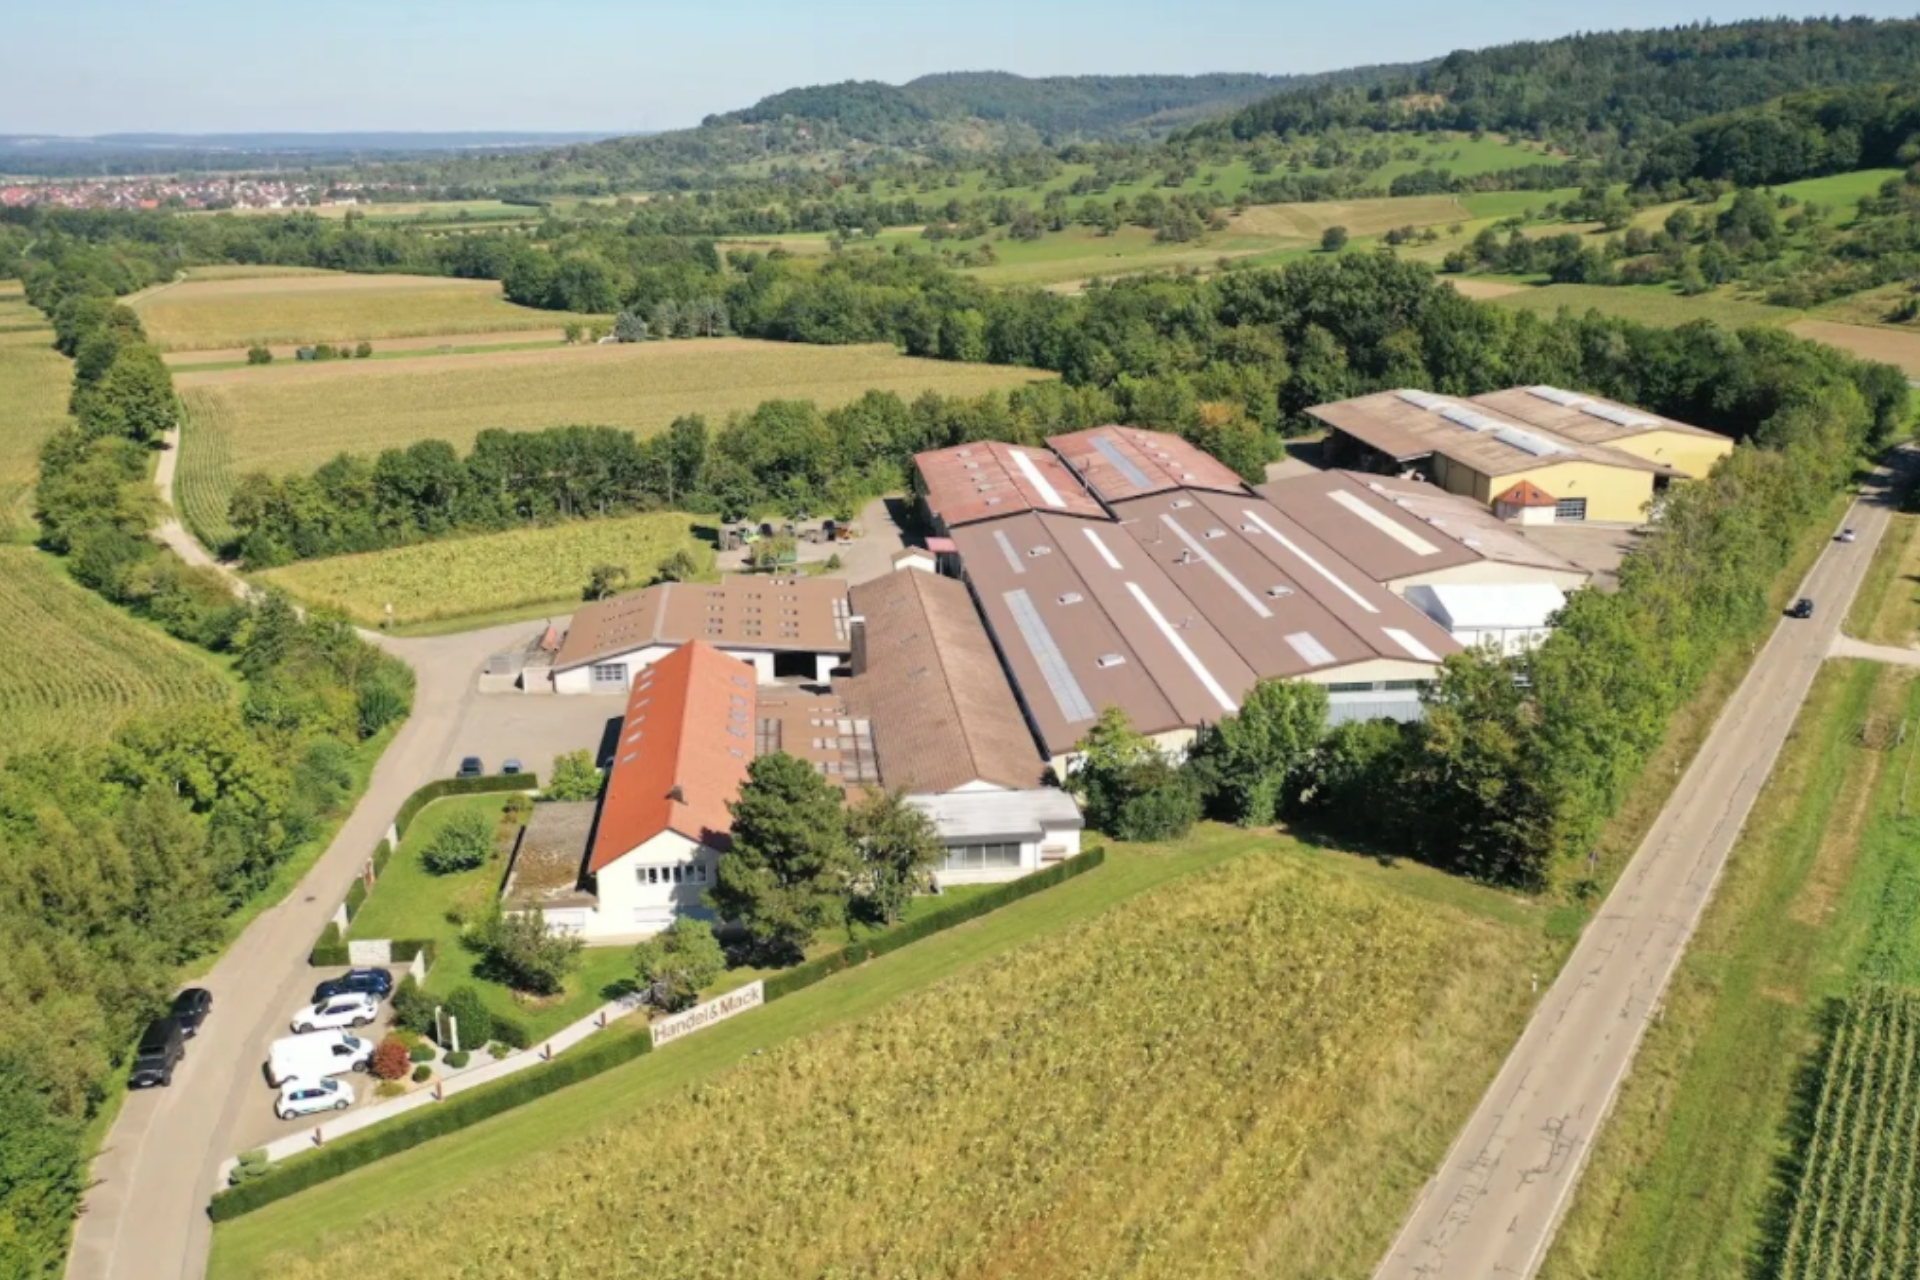 Planung und Konzeption eines Photovoltaik-Projektes für Handel & Mack GmbH & Co. KG, ein Unternehmen in Weilheim an der Teck, das sich auf hochwertige Dachsysteme und individuelle Sonderbleche spezialisiert hat.